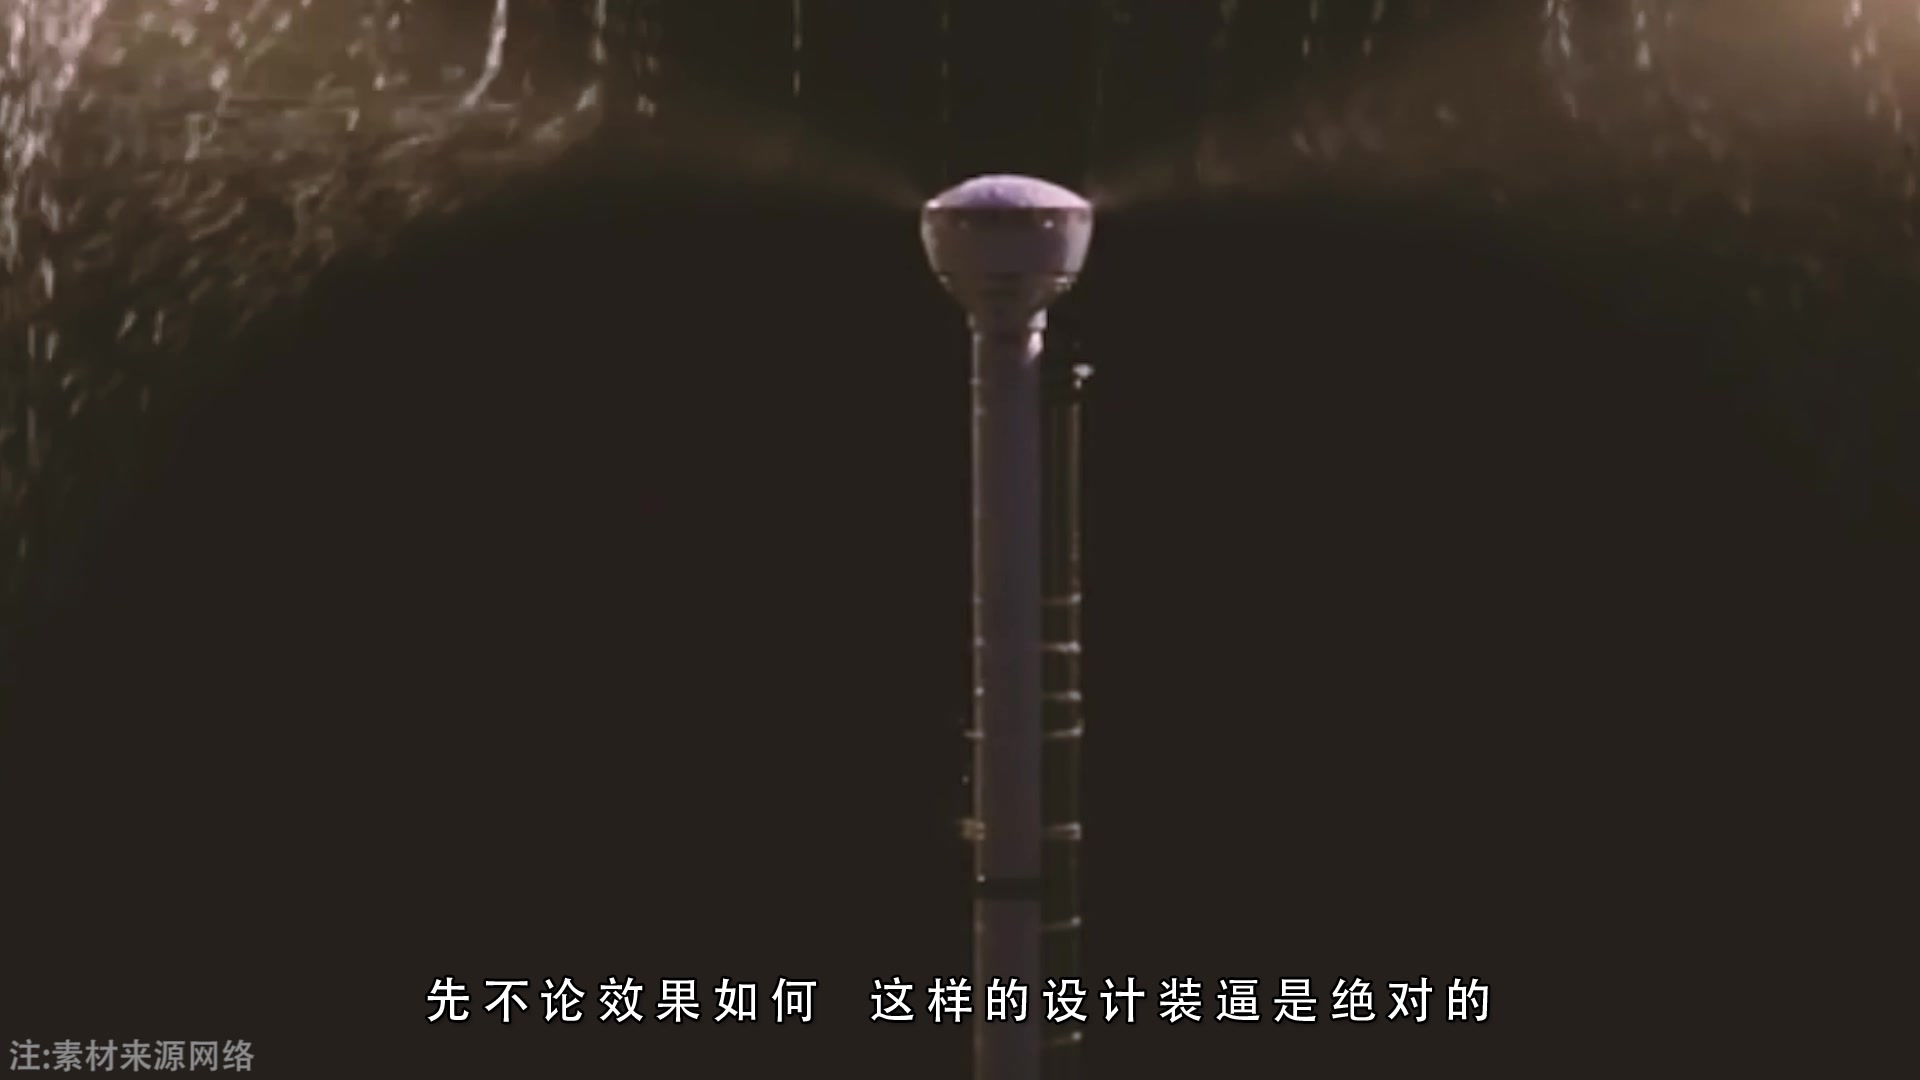 【TrackerS】中国小伙发明超酷黑科技雨伞, 没有伞面, 全靠空气挡雨, 靠谱吗?